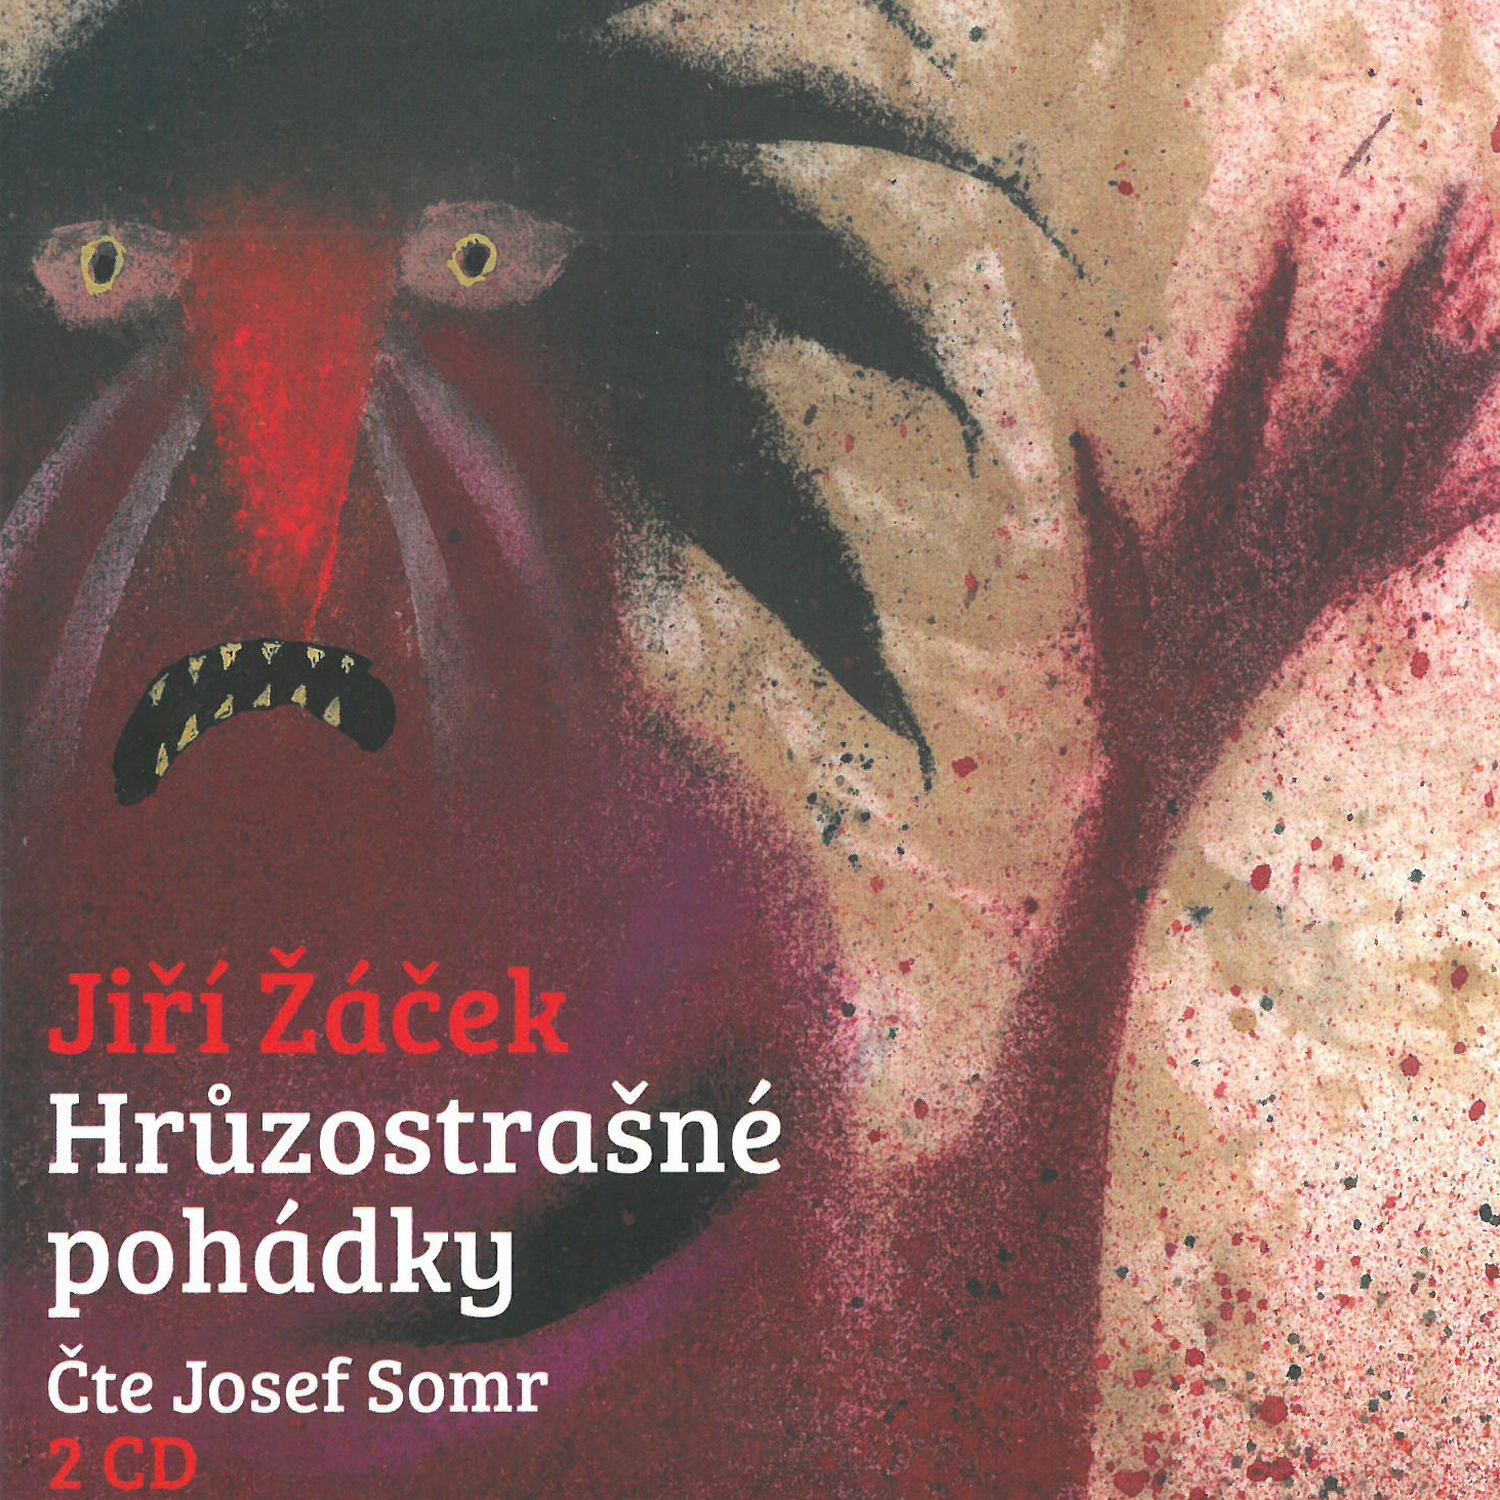 CD Shop - SOMR JOSEF ZACEK: HRUZOSTRASNE POHADKY